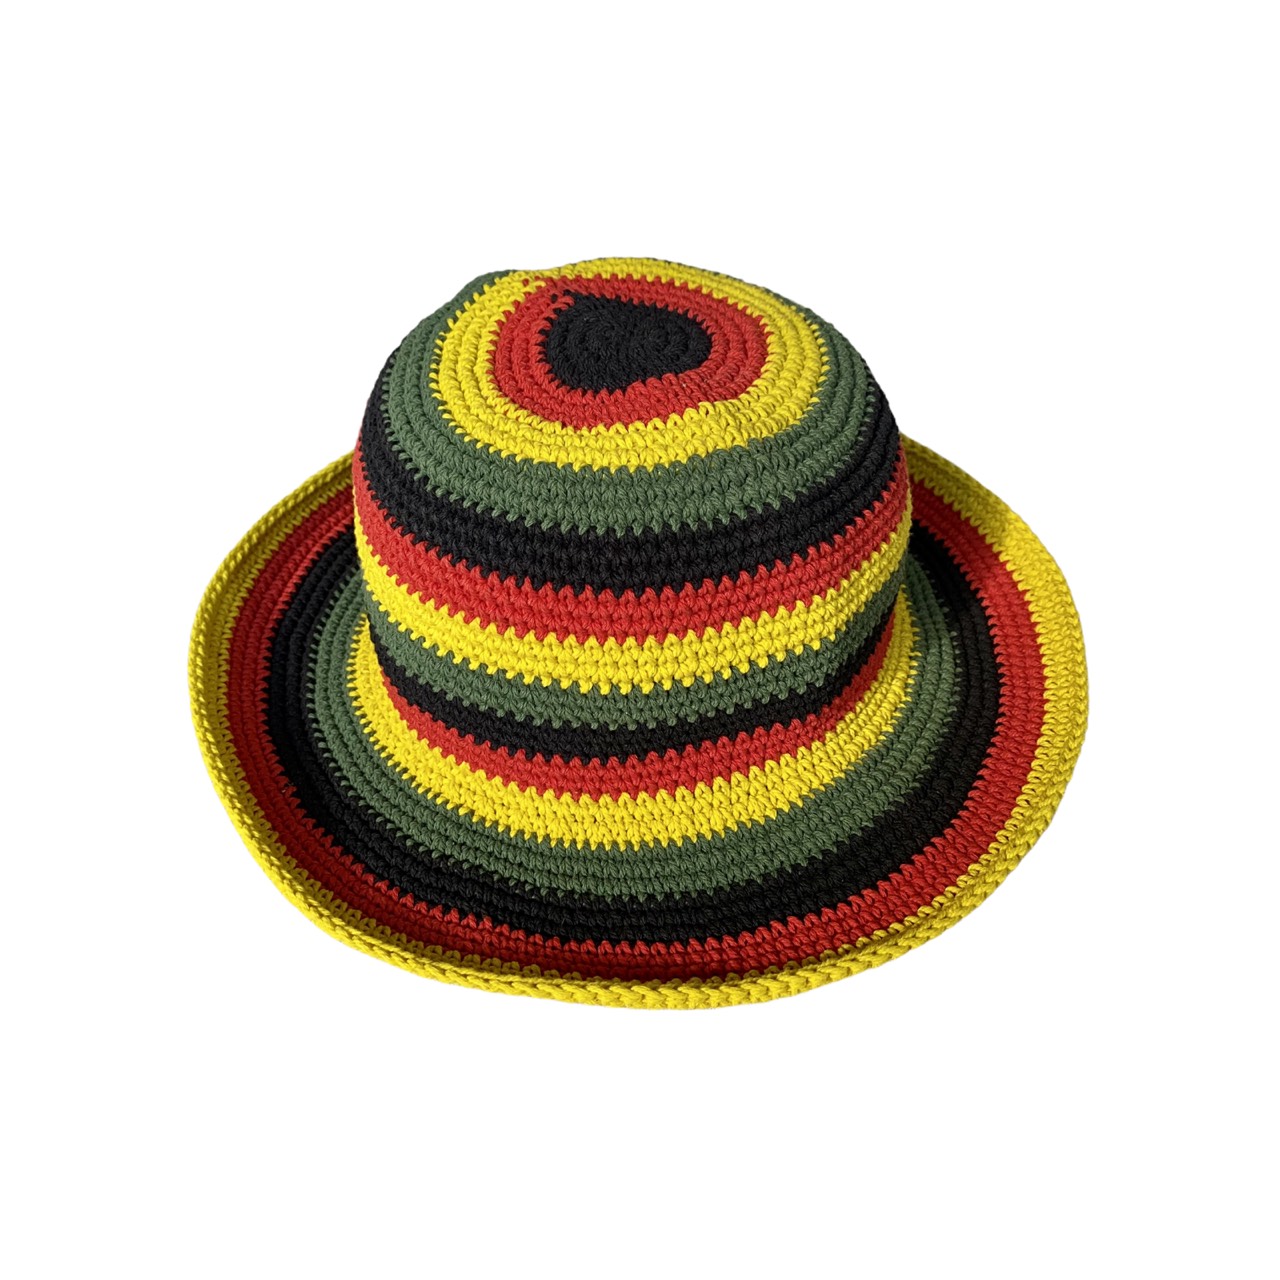 หมวกถักแสนดี หมวกถักสไตล์วินเทจ หมวกบักเก็ต(สีรุ้ง/จาไมก้า) งานถักHandmade100%